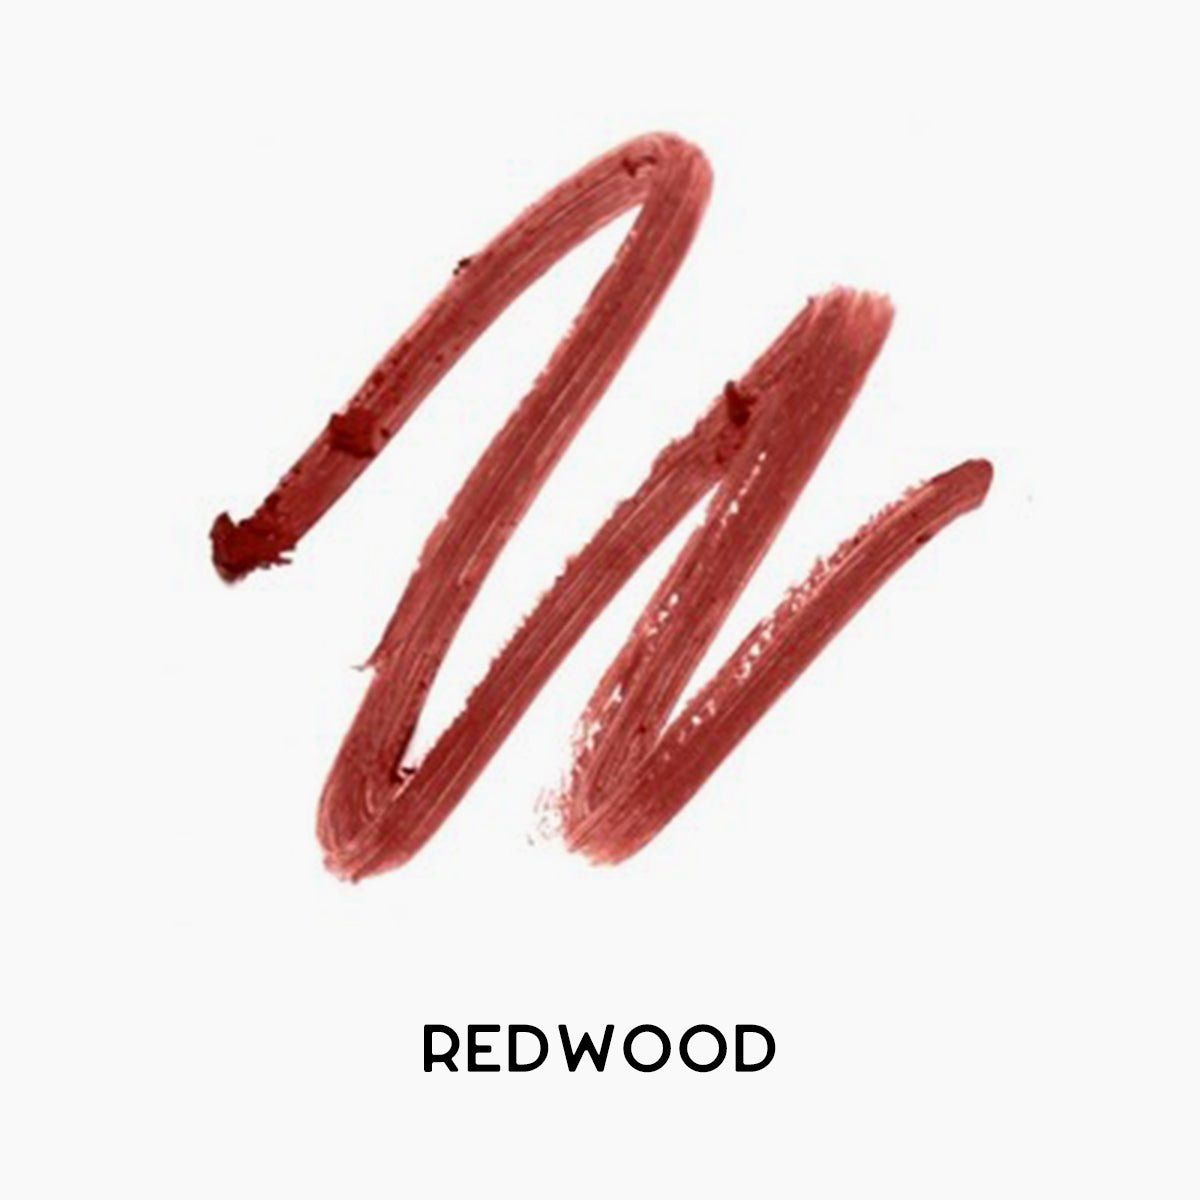 redwood copy